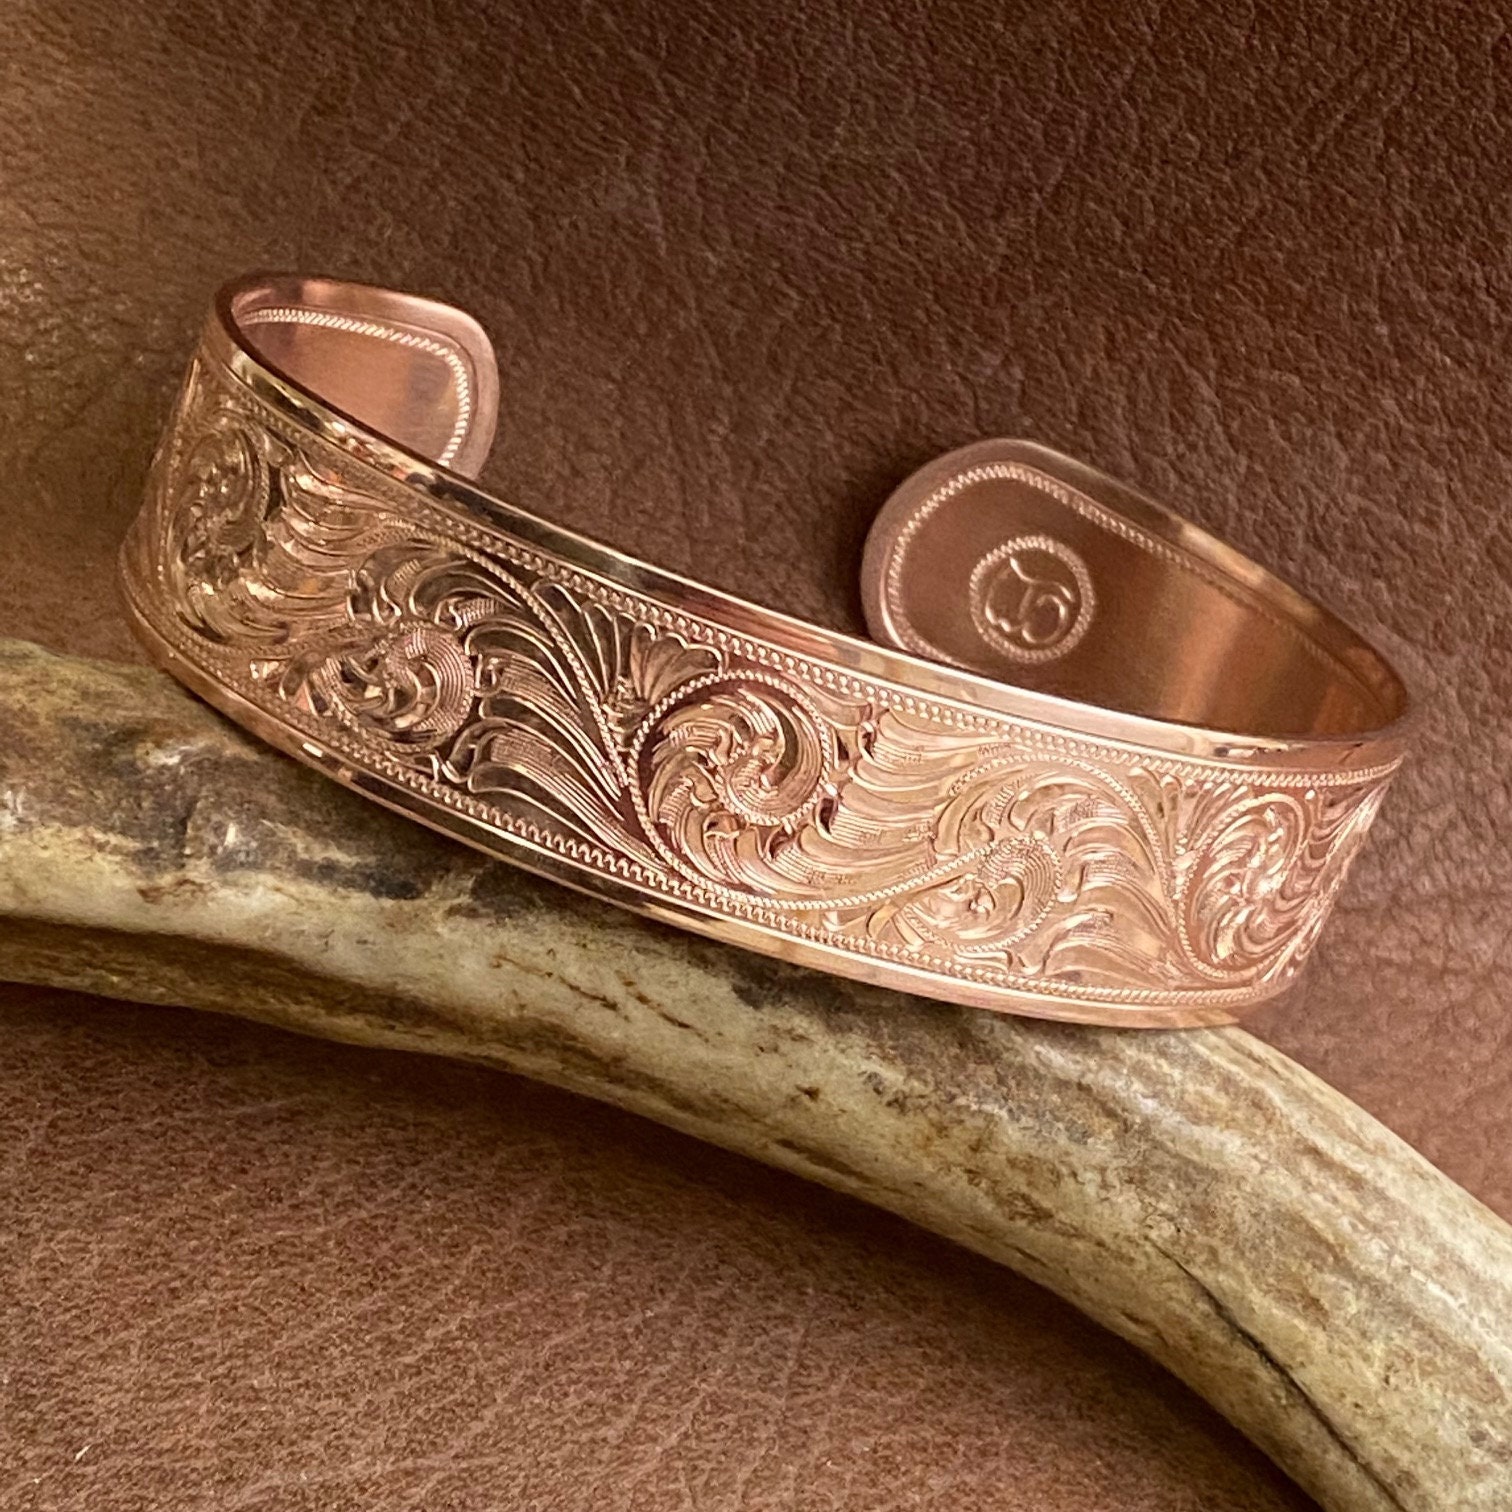 Copper bracelet 0217, Sattva Ayurveda